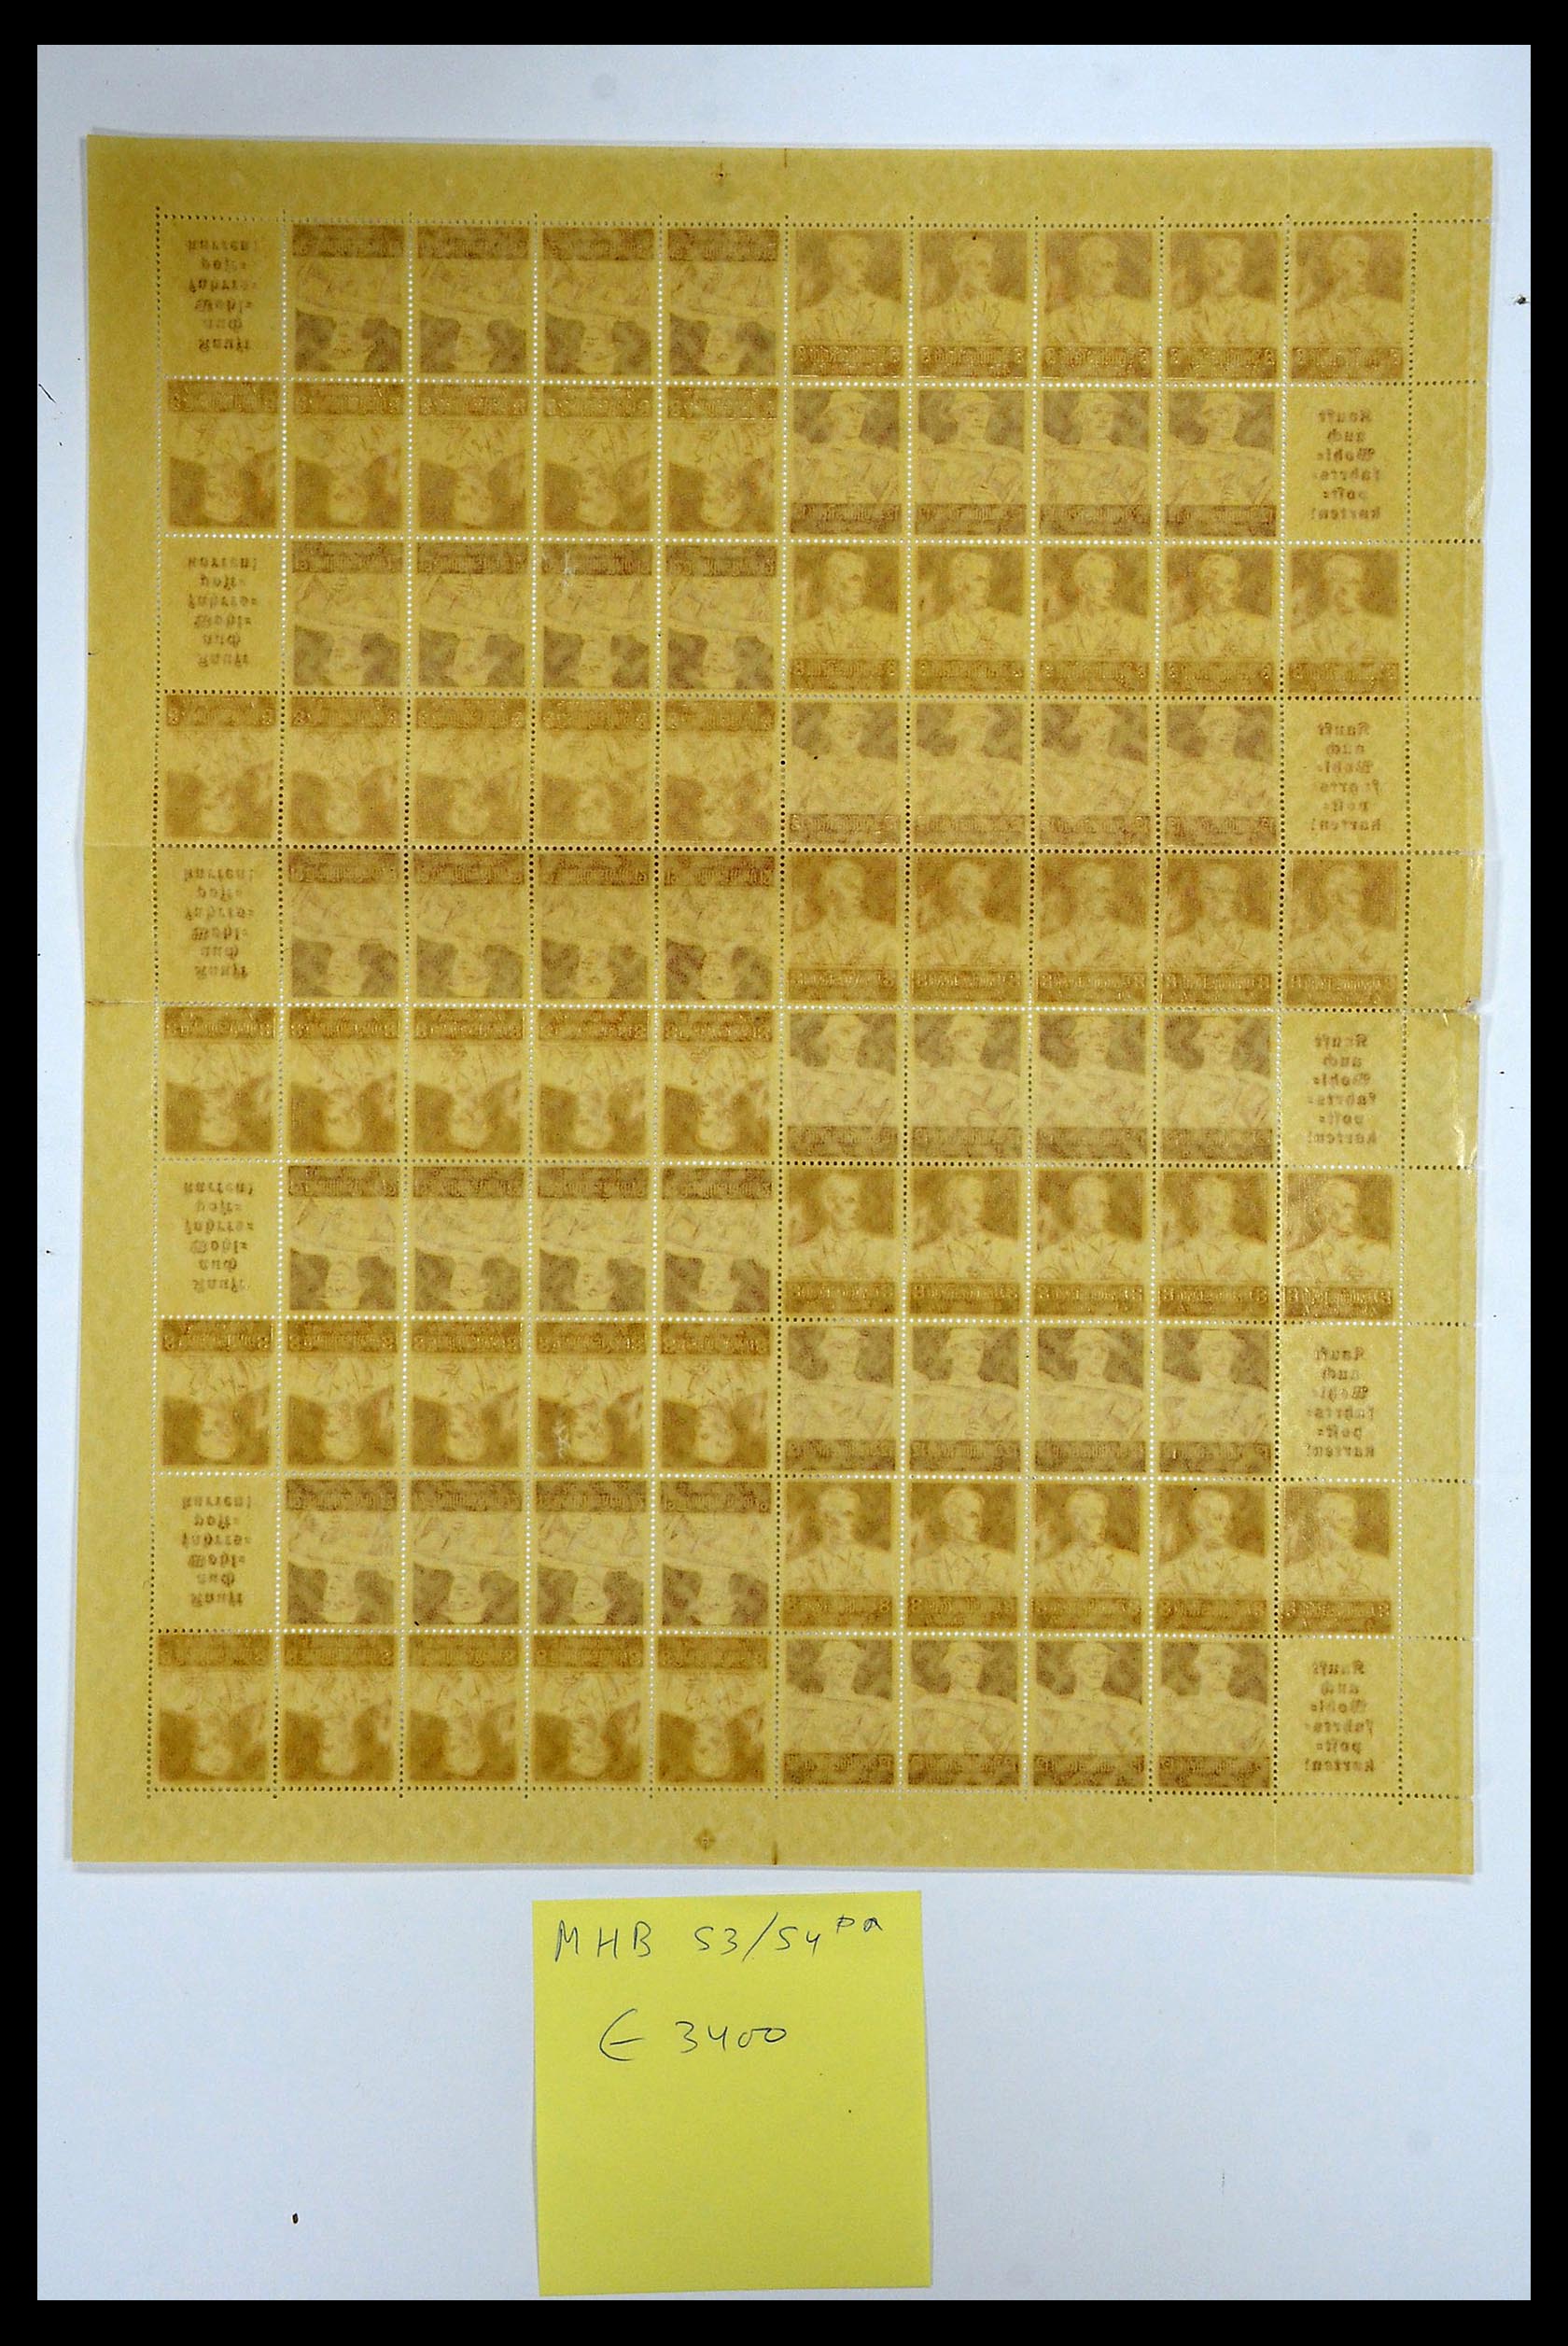 35075 034 - Stamp Collection 35075 German Reich Markenheftchenbogen 1933-1941.